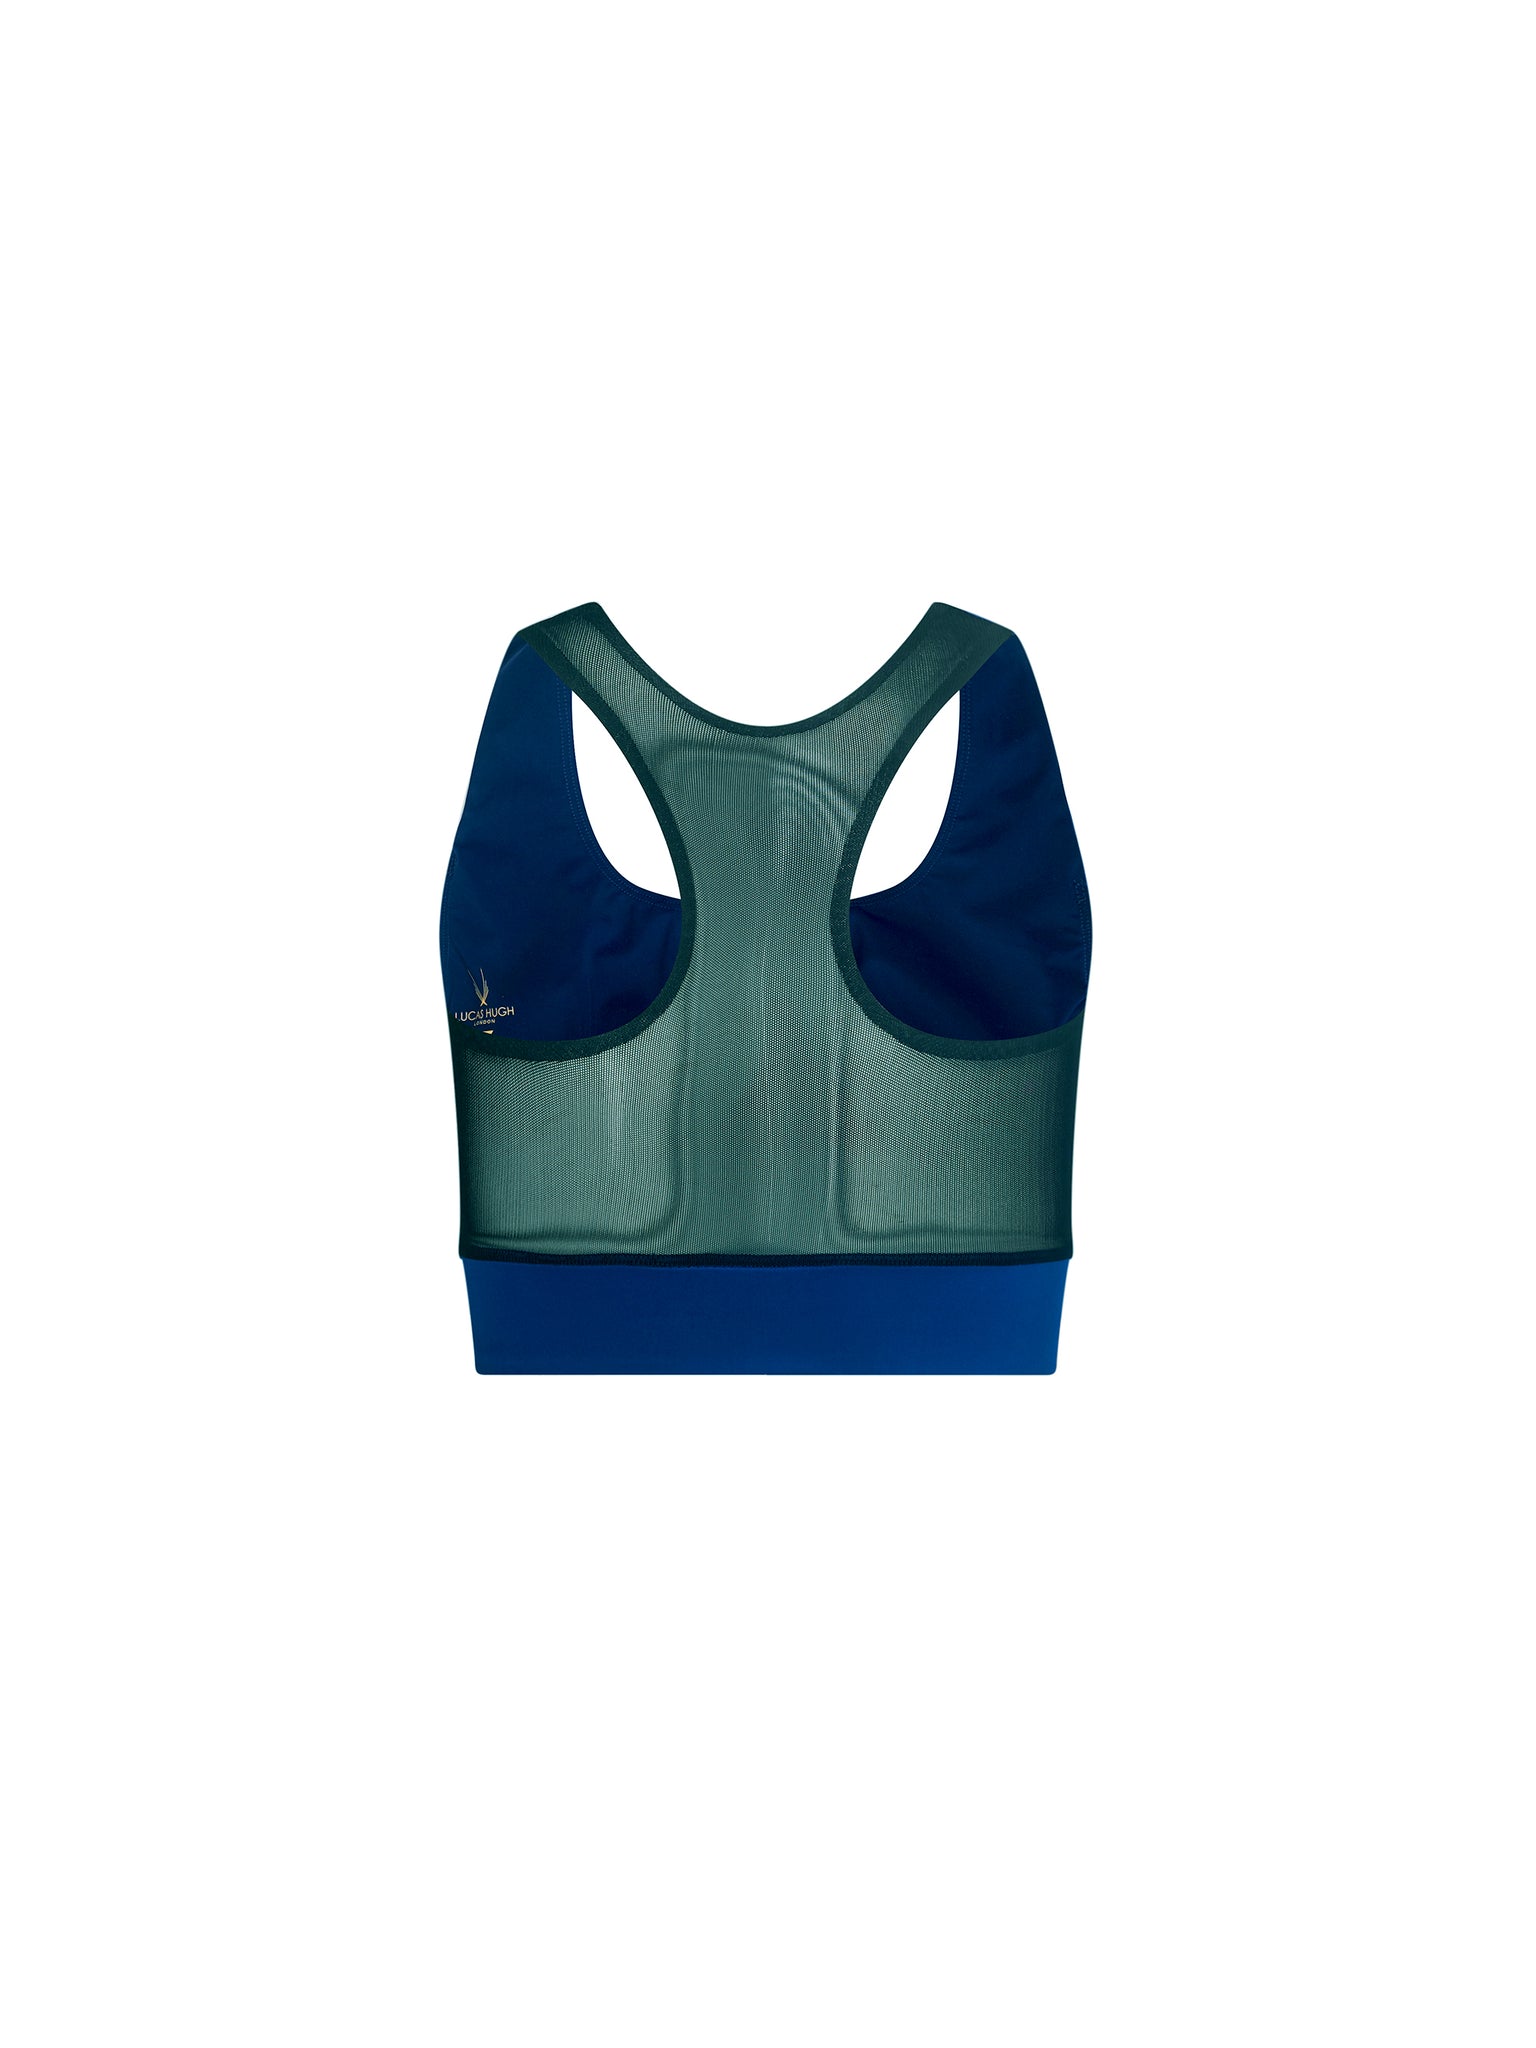 Blue all in motion sports bra 🦋 Size L! In great - Depop